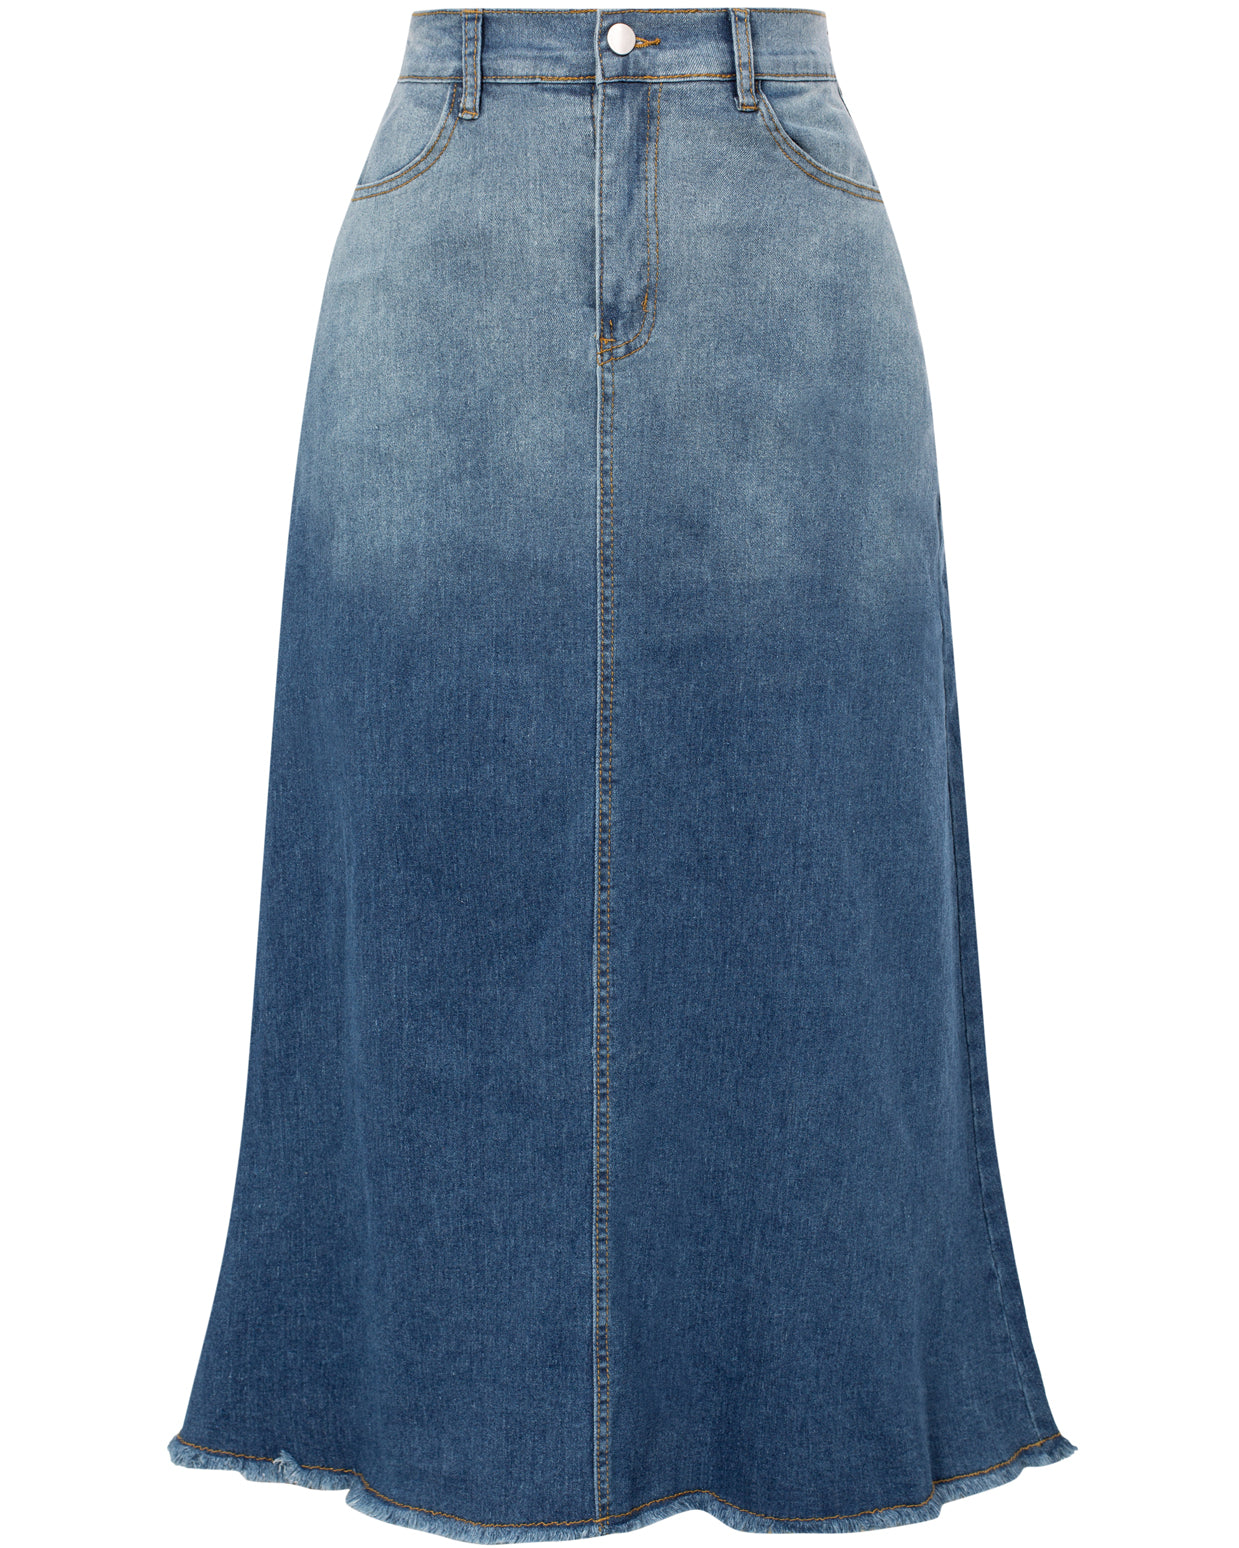 Multi-Pocket Jean Skirt